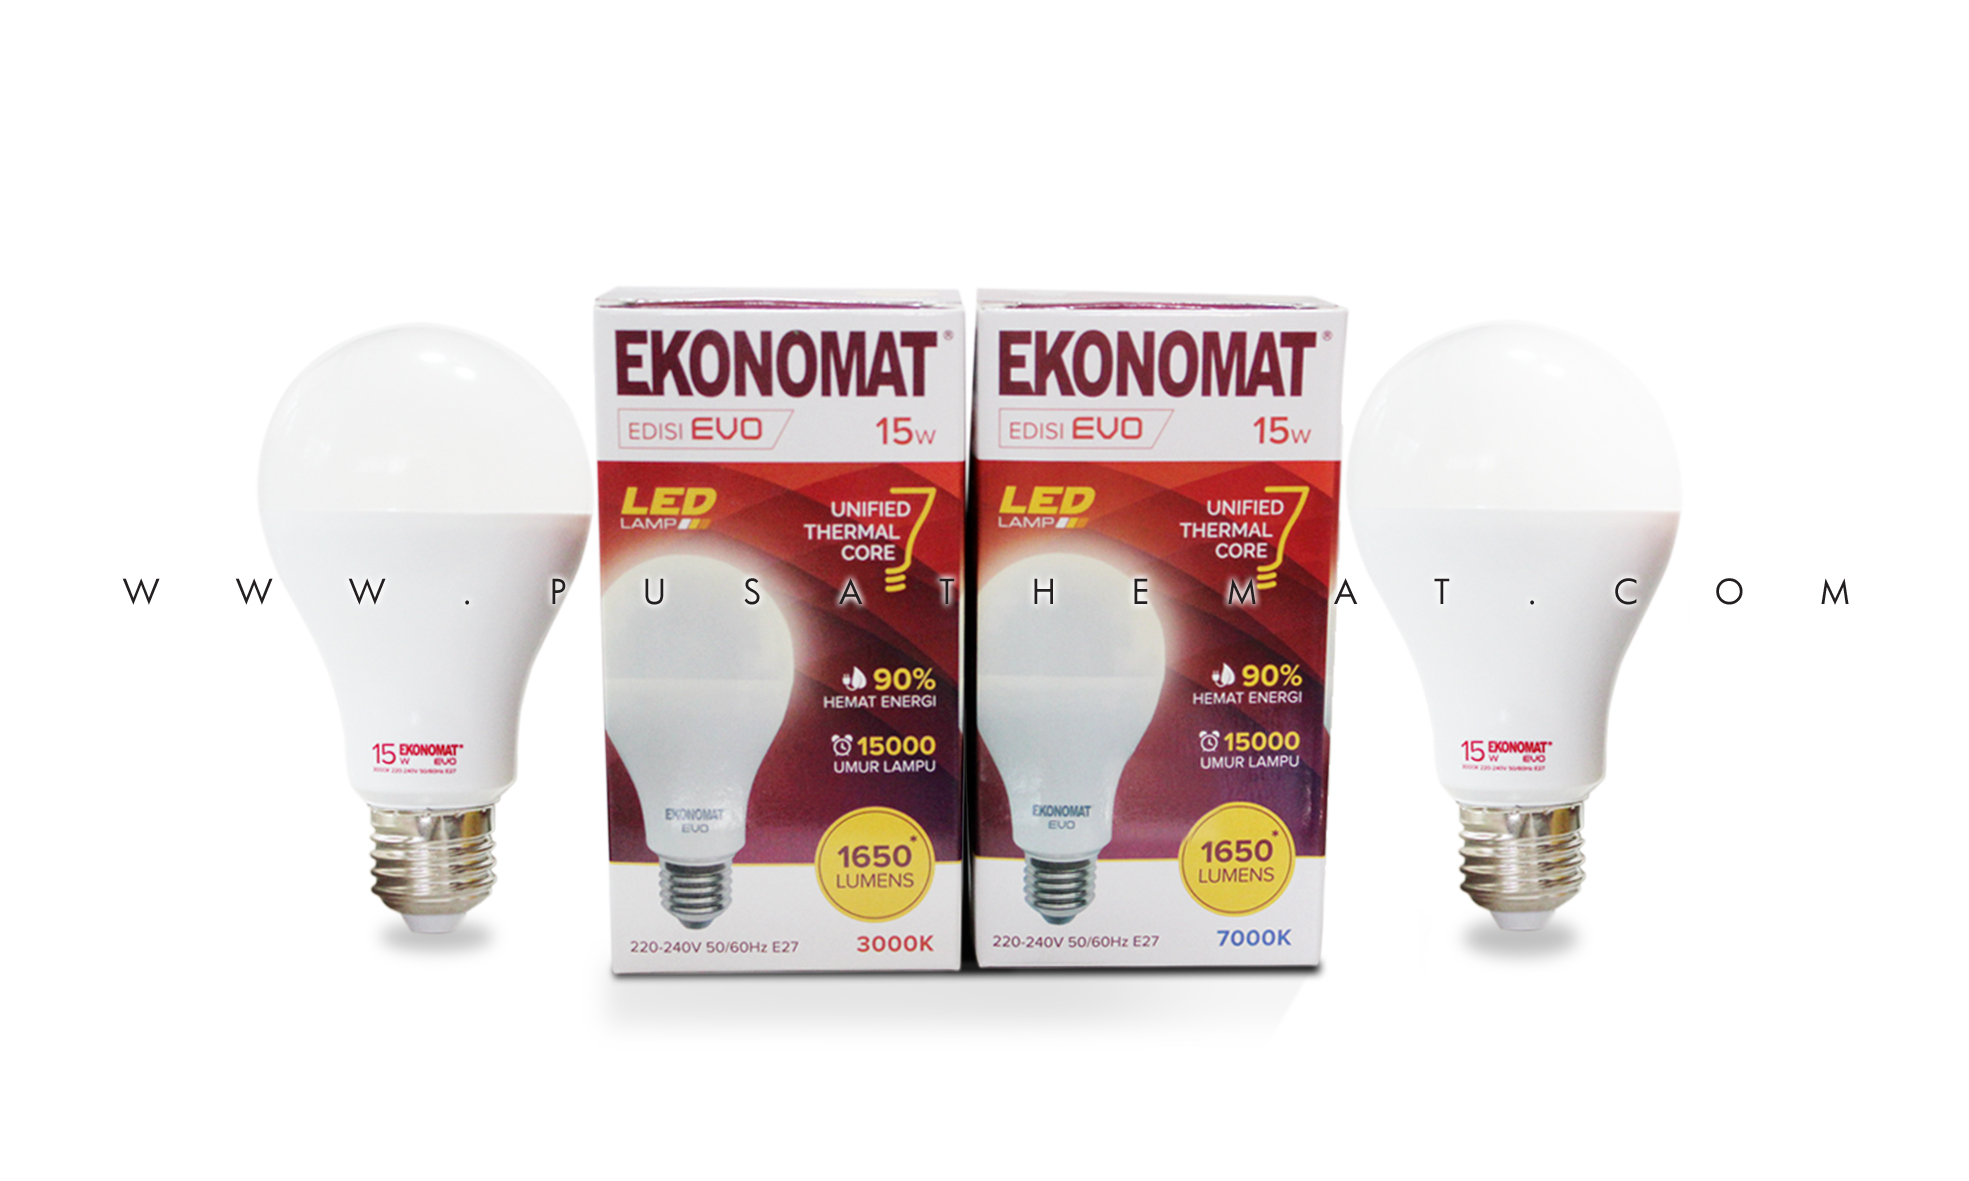 Product :: Lamp :: LED :: Ekonomat LED EVO